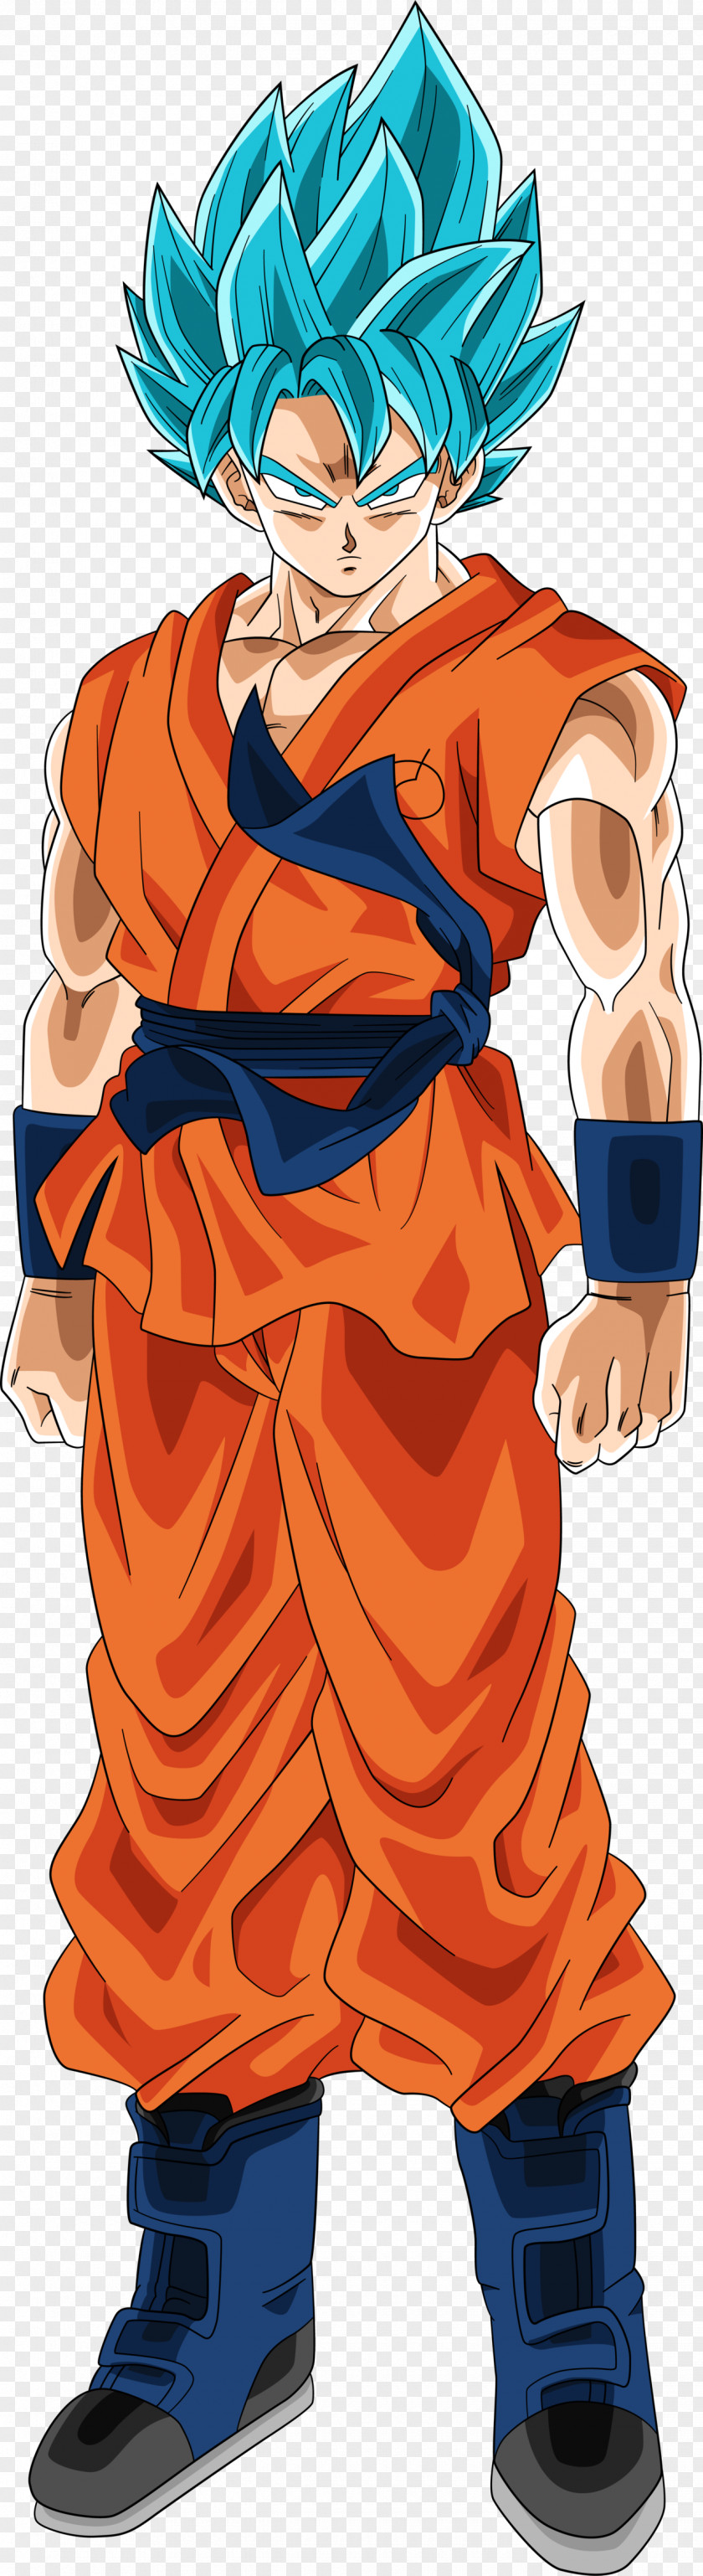 Goku Dragon Ball Heroes Vegeta Piccolo Cell PNG